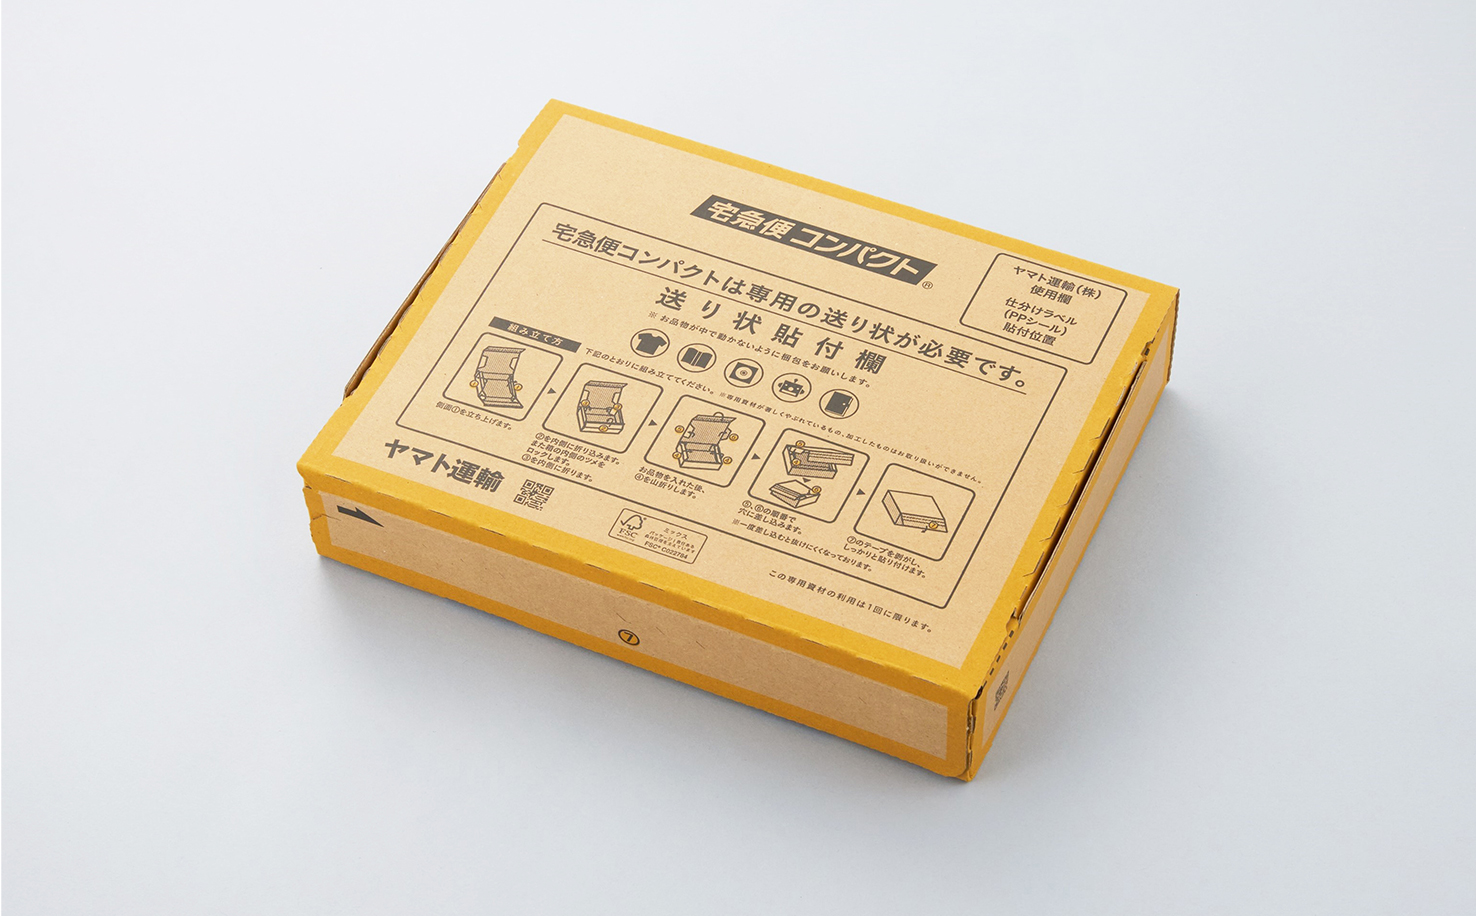 TA-Q-BIN Compact box2